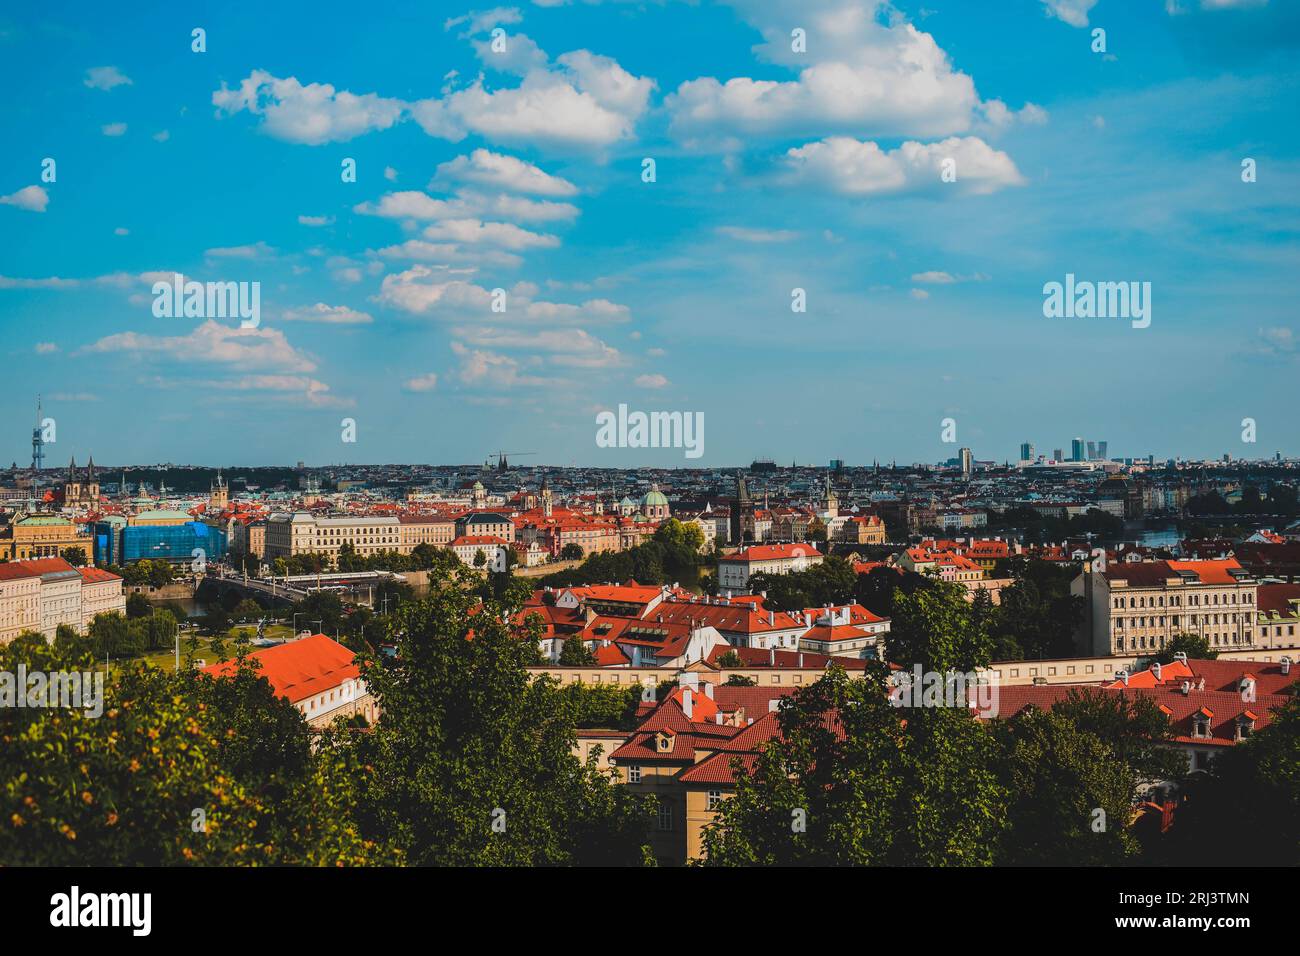 Une vue aérienne du paysage urbain de Prague avec ses toits rouges vibrants, vue de loin Banque D'Images